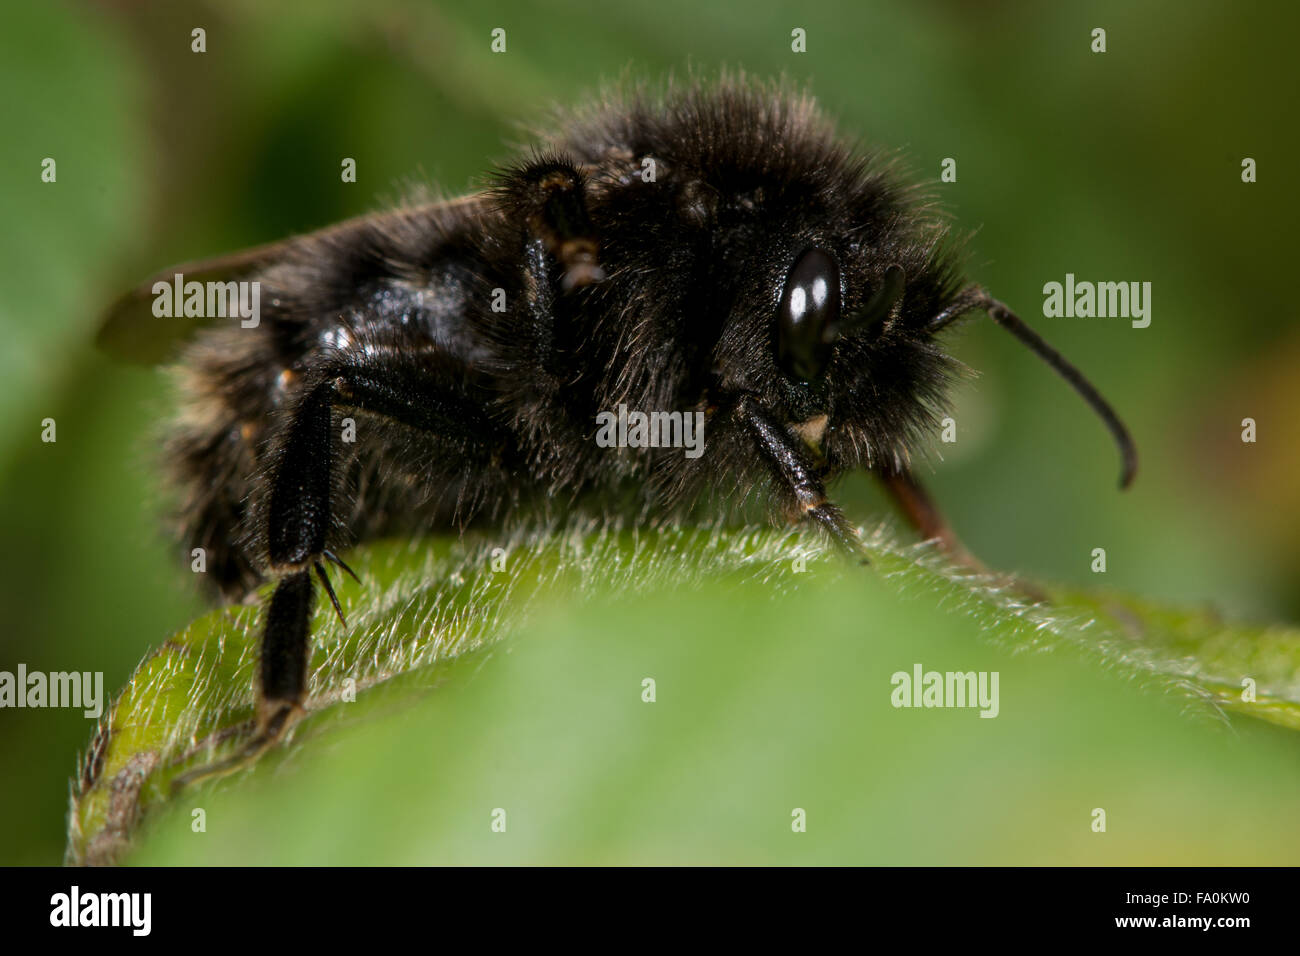 Feld Kuckuck Biene (Bombus Campestris). Eine alle schwarzen Form von diesem Nest Parasit Bumblebee ruht auf einem Blatt Stockfoto